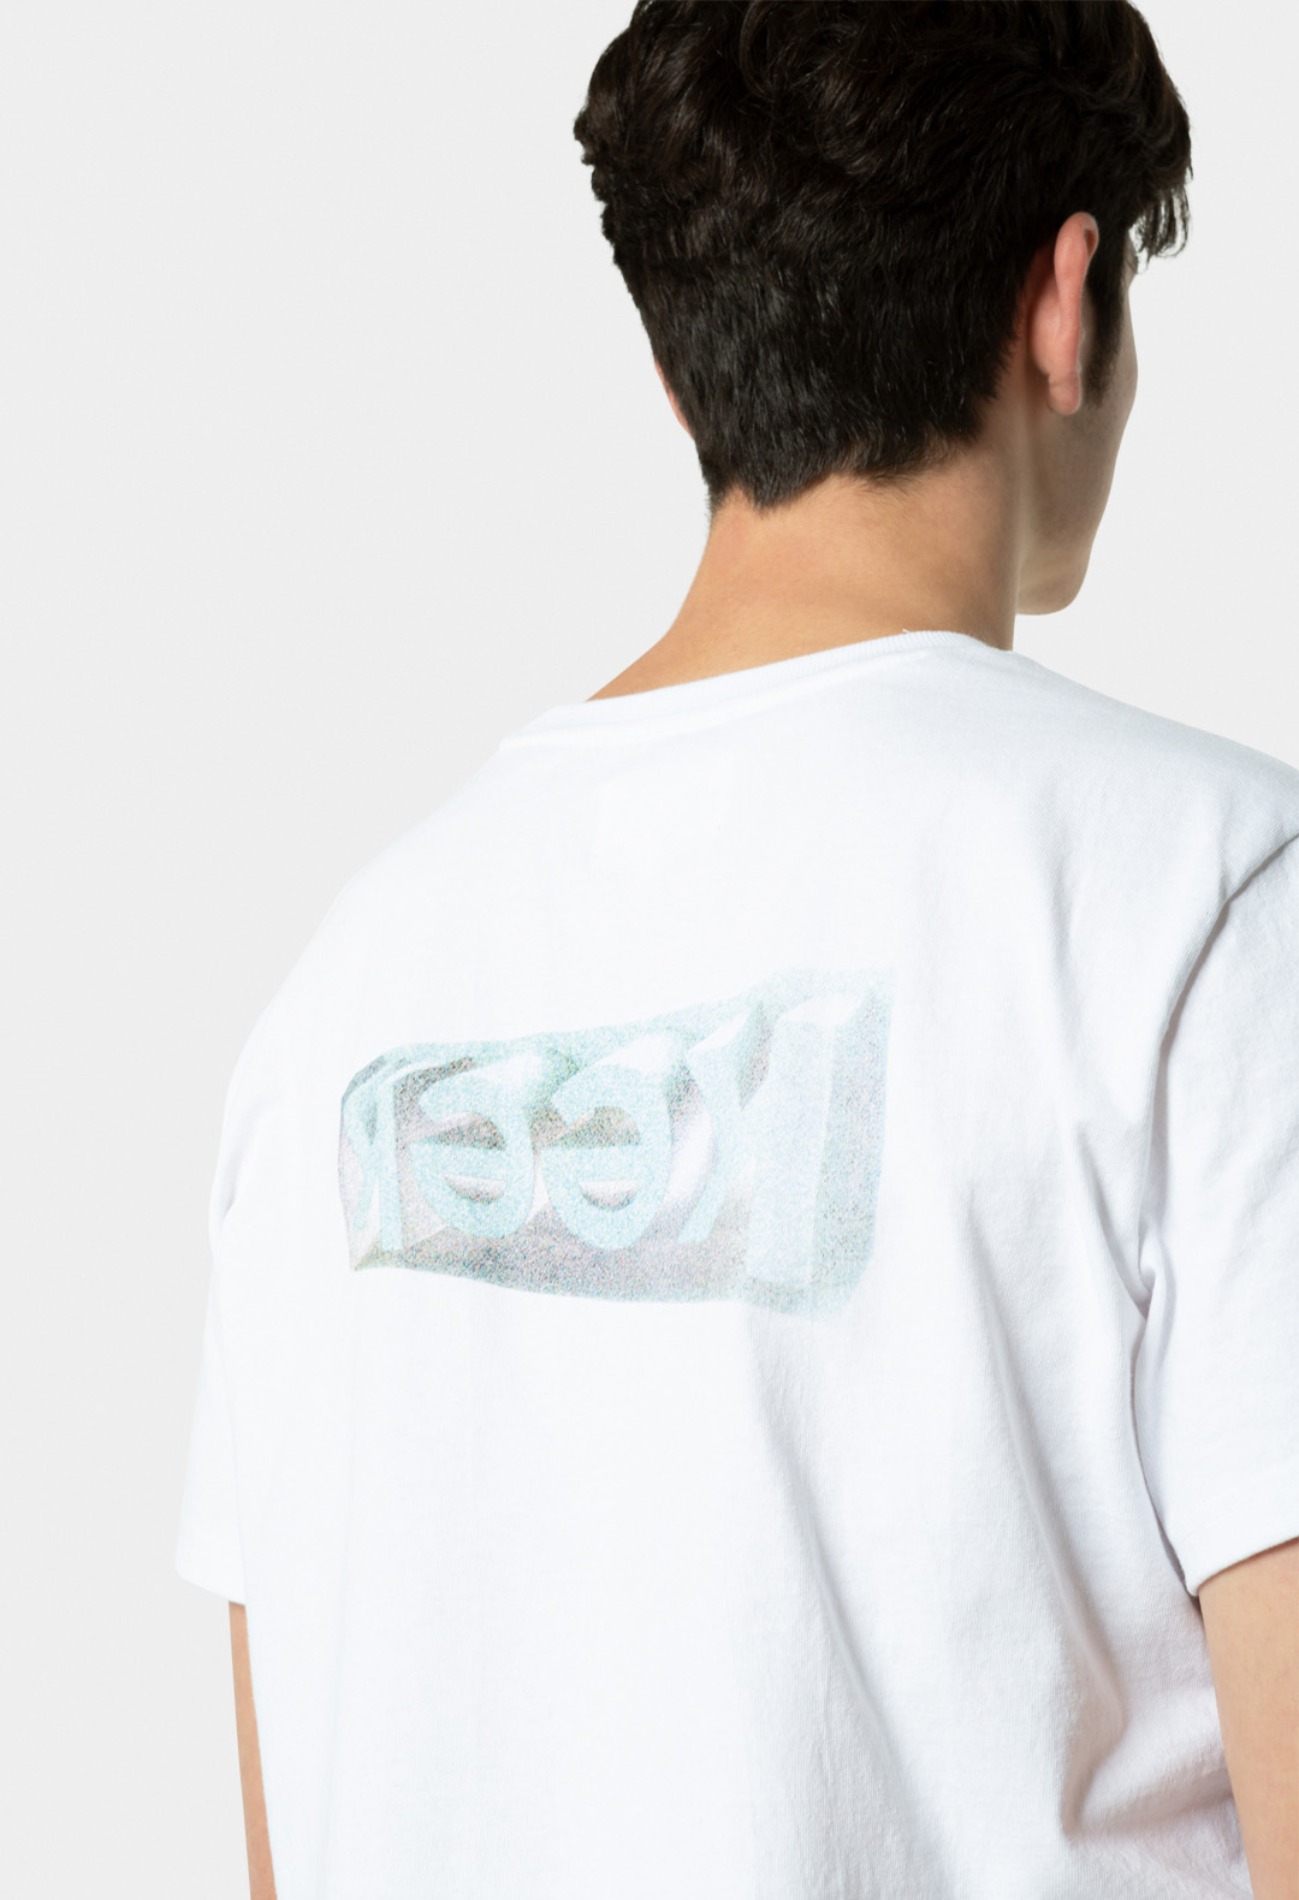 keek [Unisex] Crack T-shirts - White 스트릿패션 유니섹스브랜드 커플시밀러룩 남자쇼핑몰 여성의류쇼핑몰 후드티 힙색